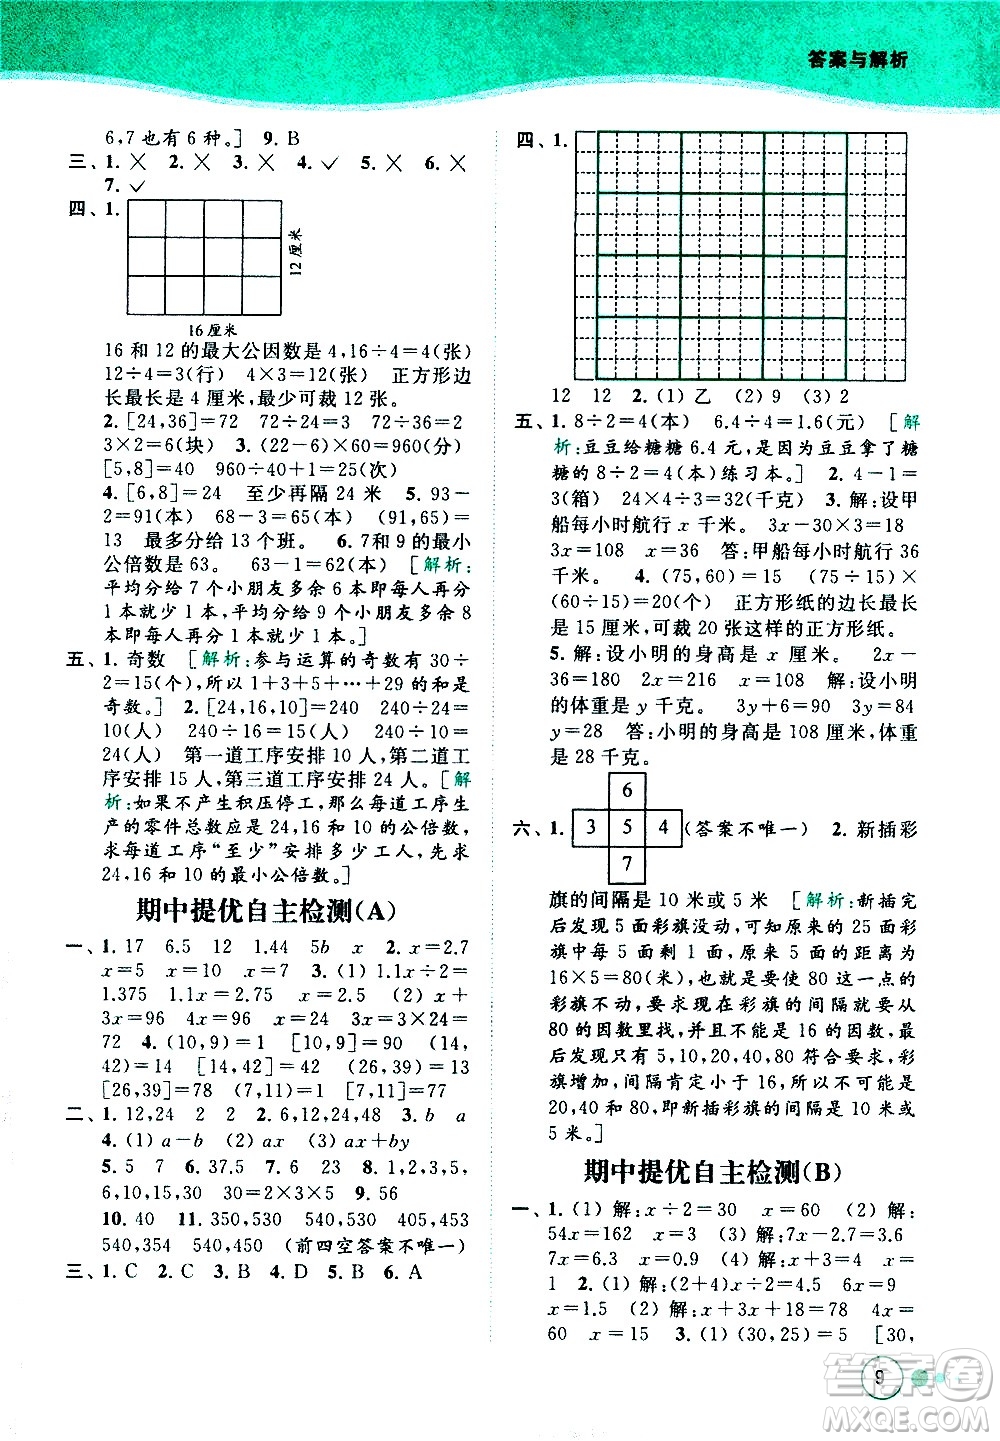 北京教育出版社2021亮点给力提优班多维互动空间数学五年级下册江苏版答案